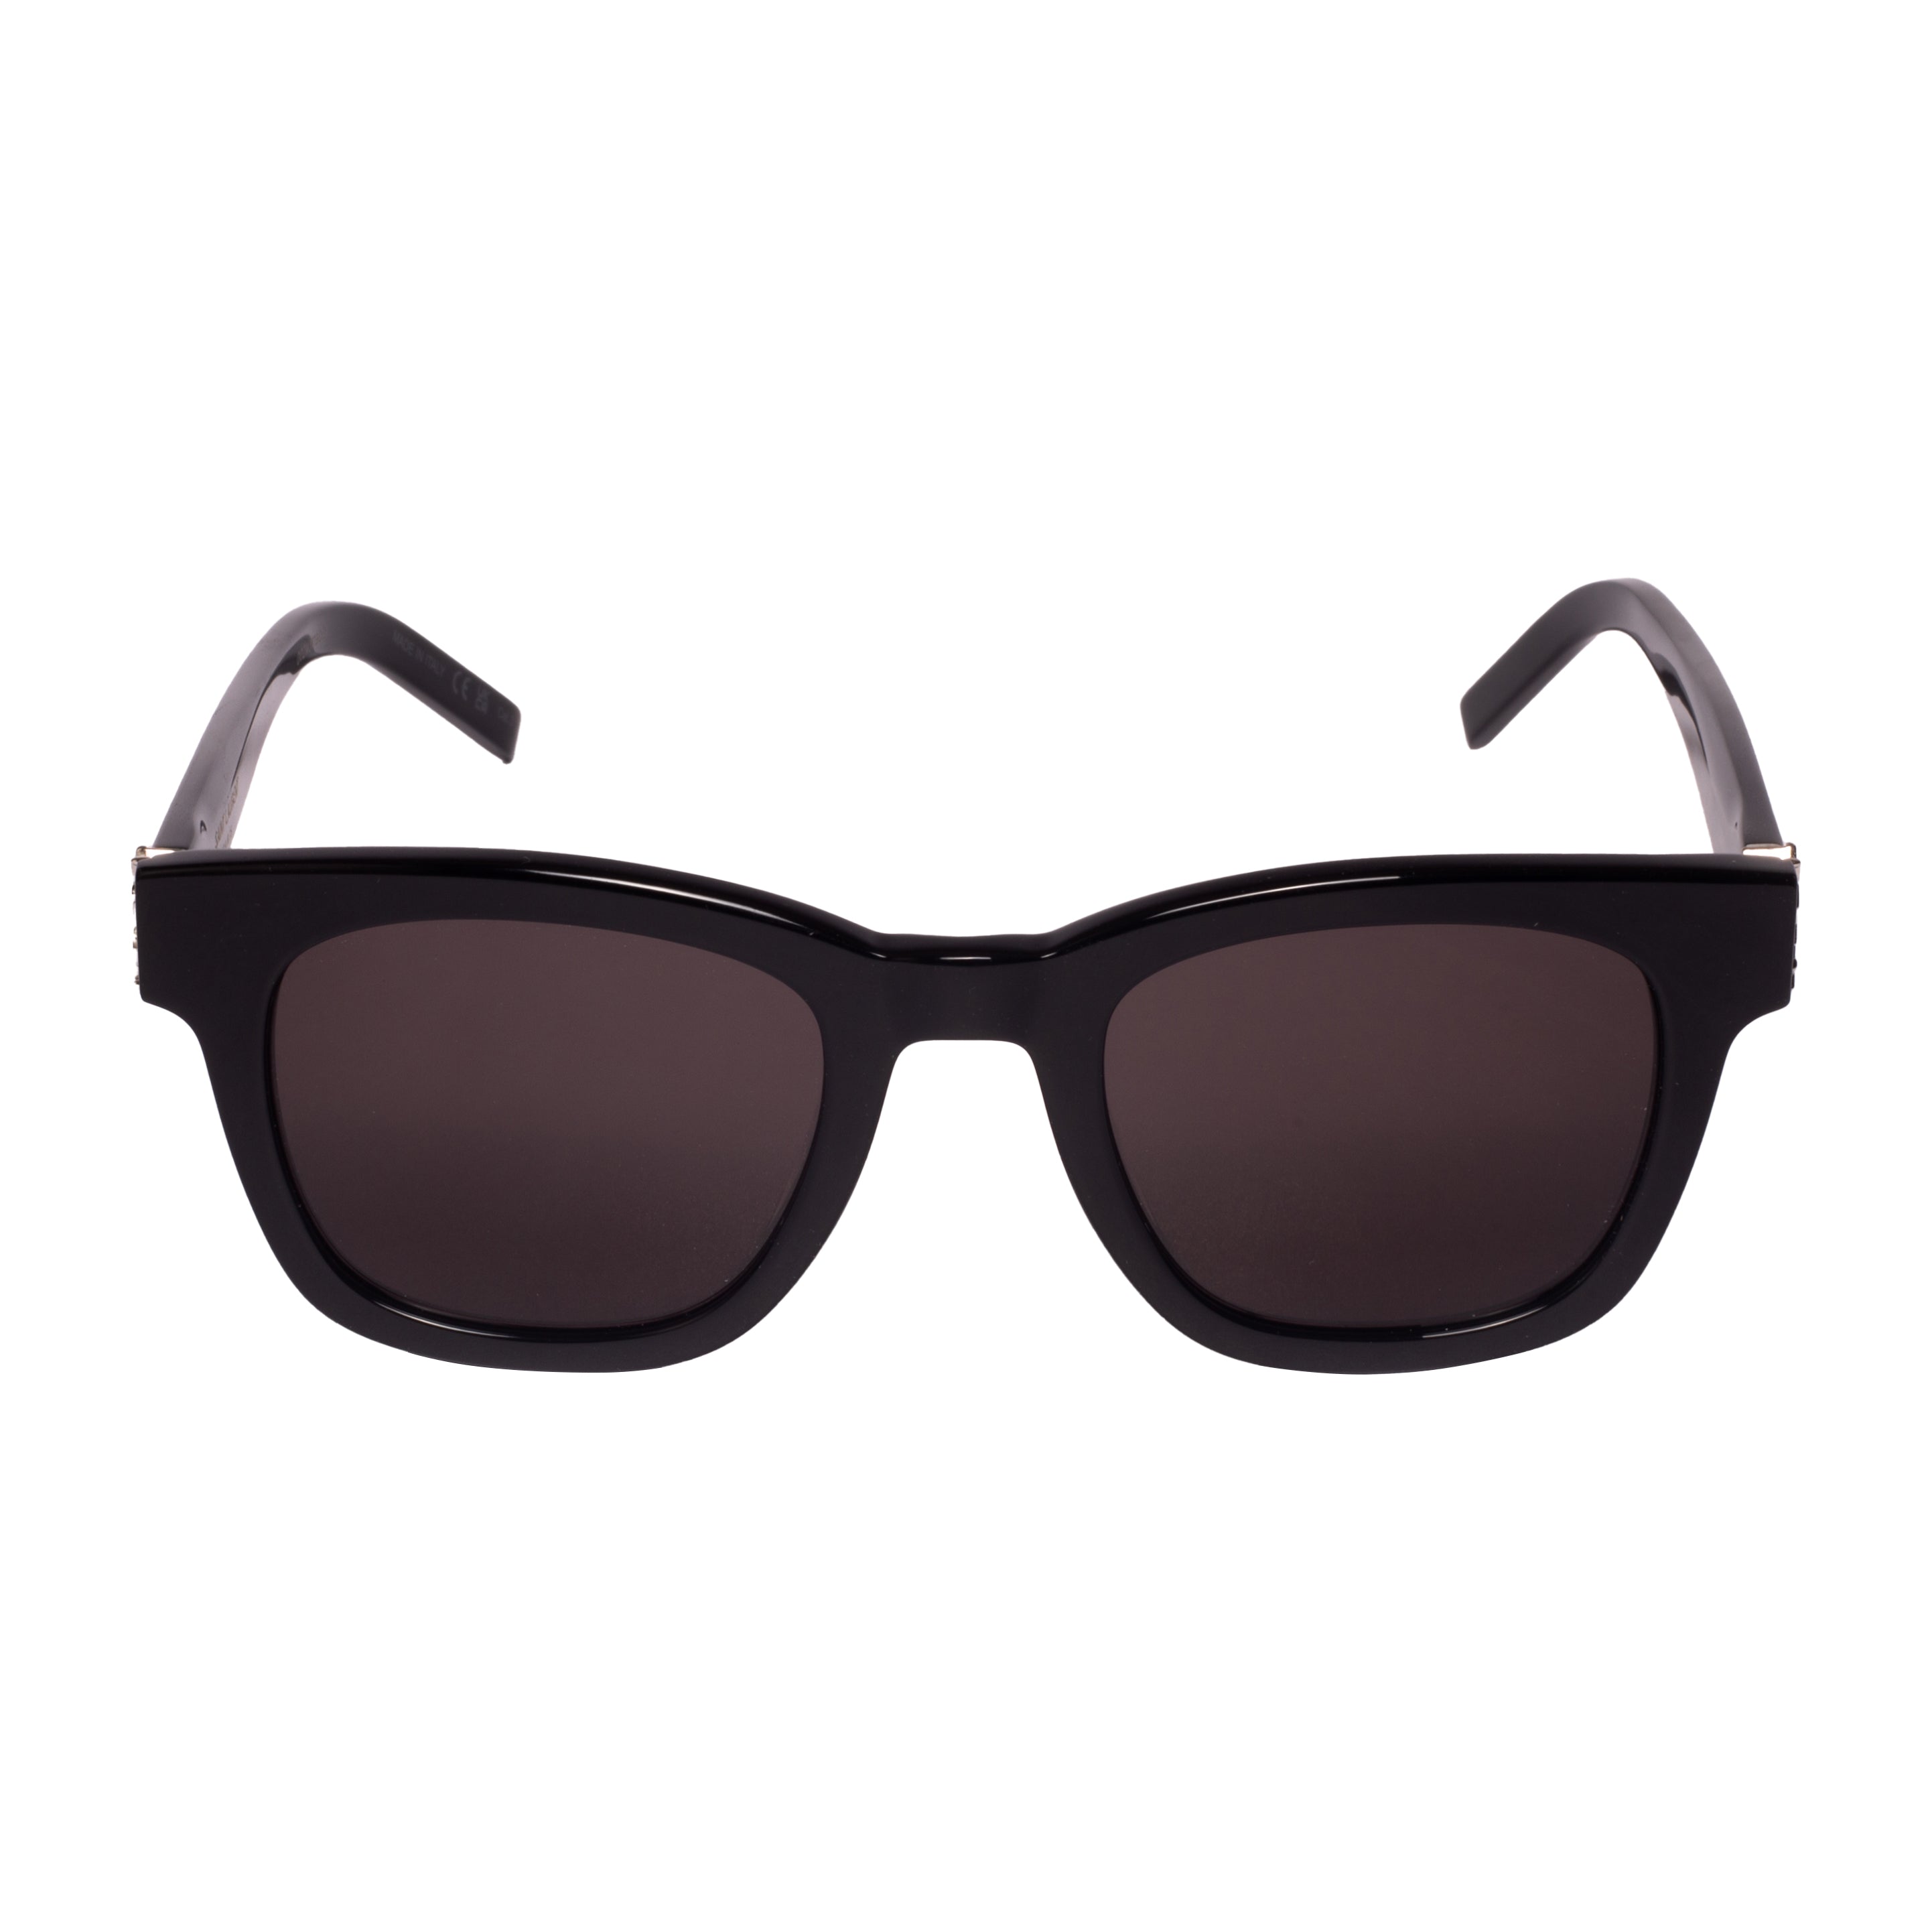 Saint Laurent-SL M124-49-001 Sunglasses - Premium Sunglasses from Saint Laurent - Just Rs. 24100! Shop now at Laxmi Opticians